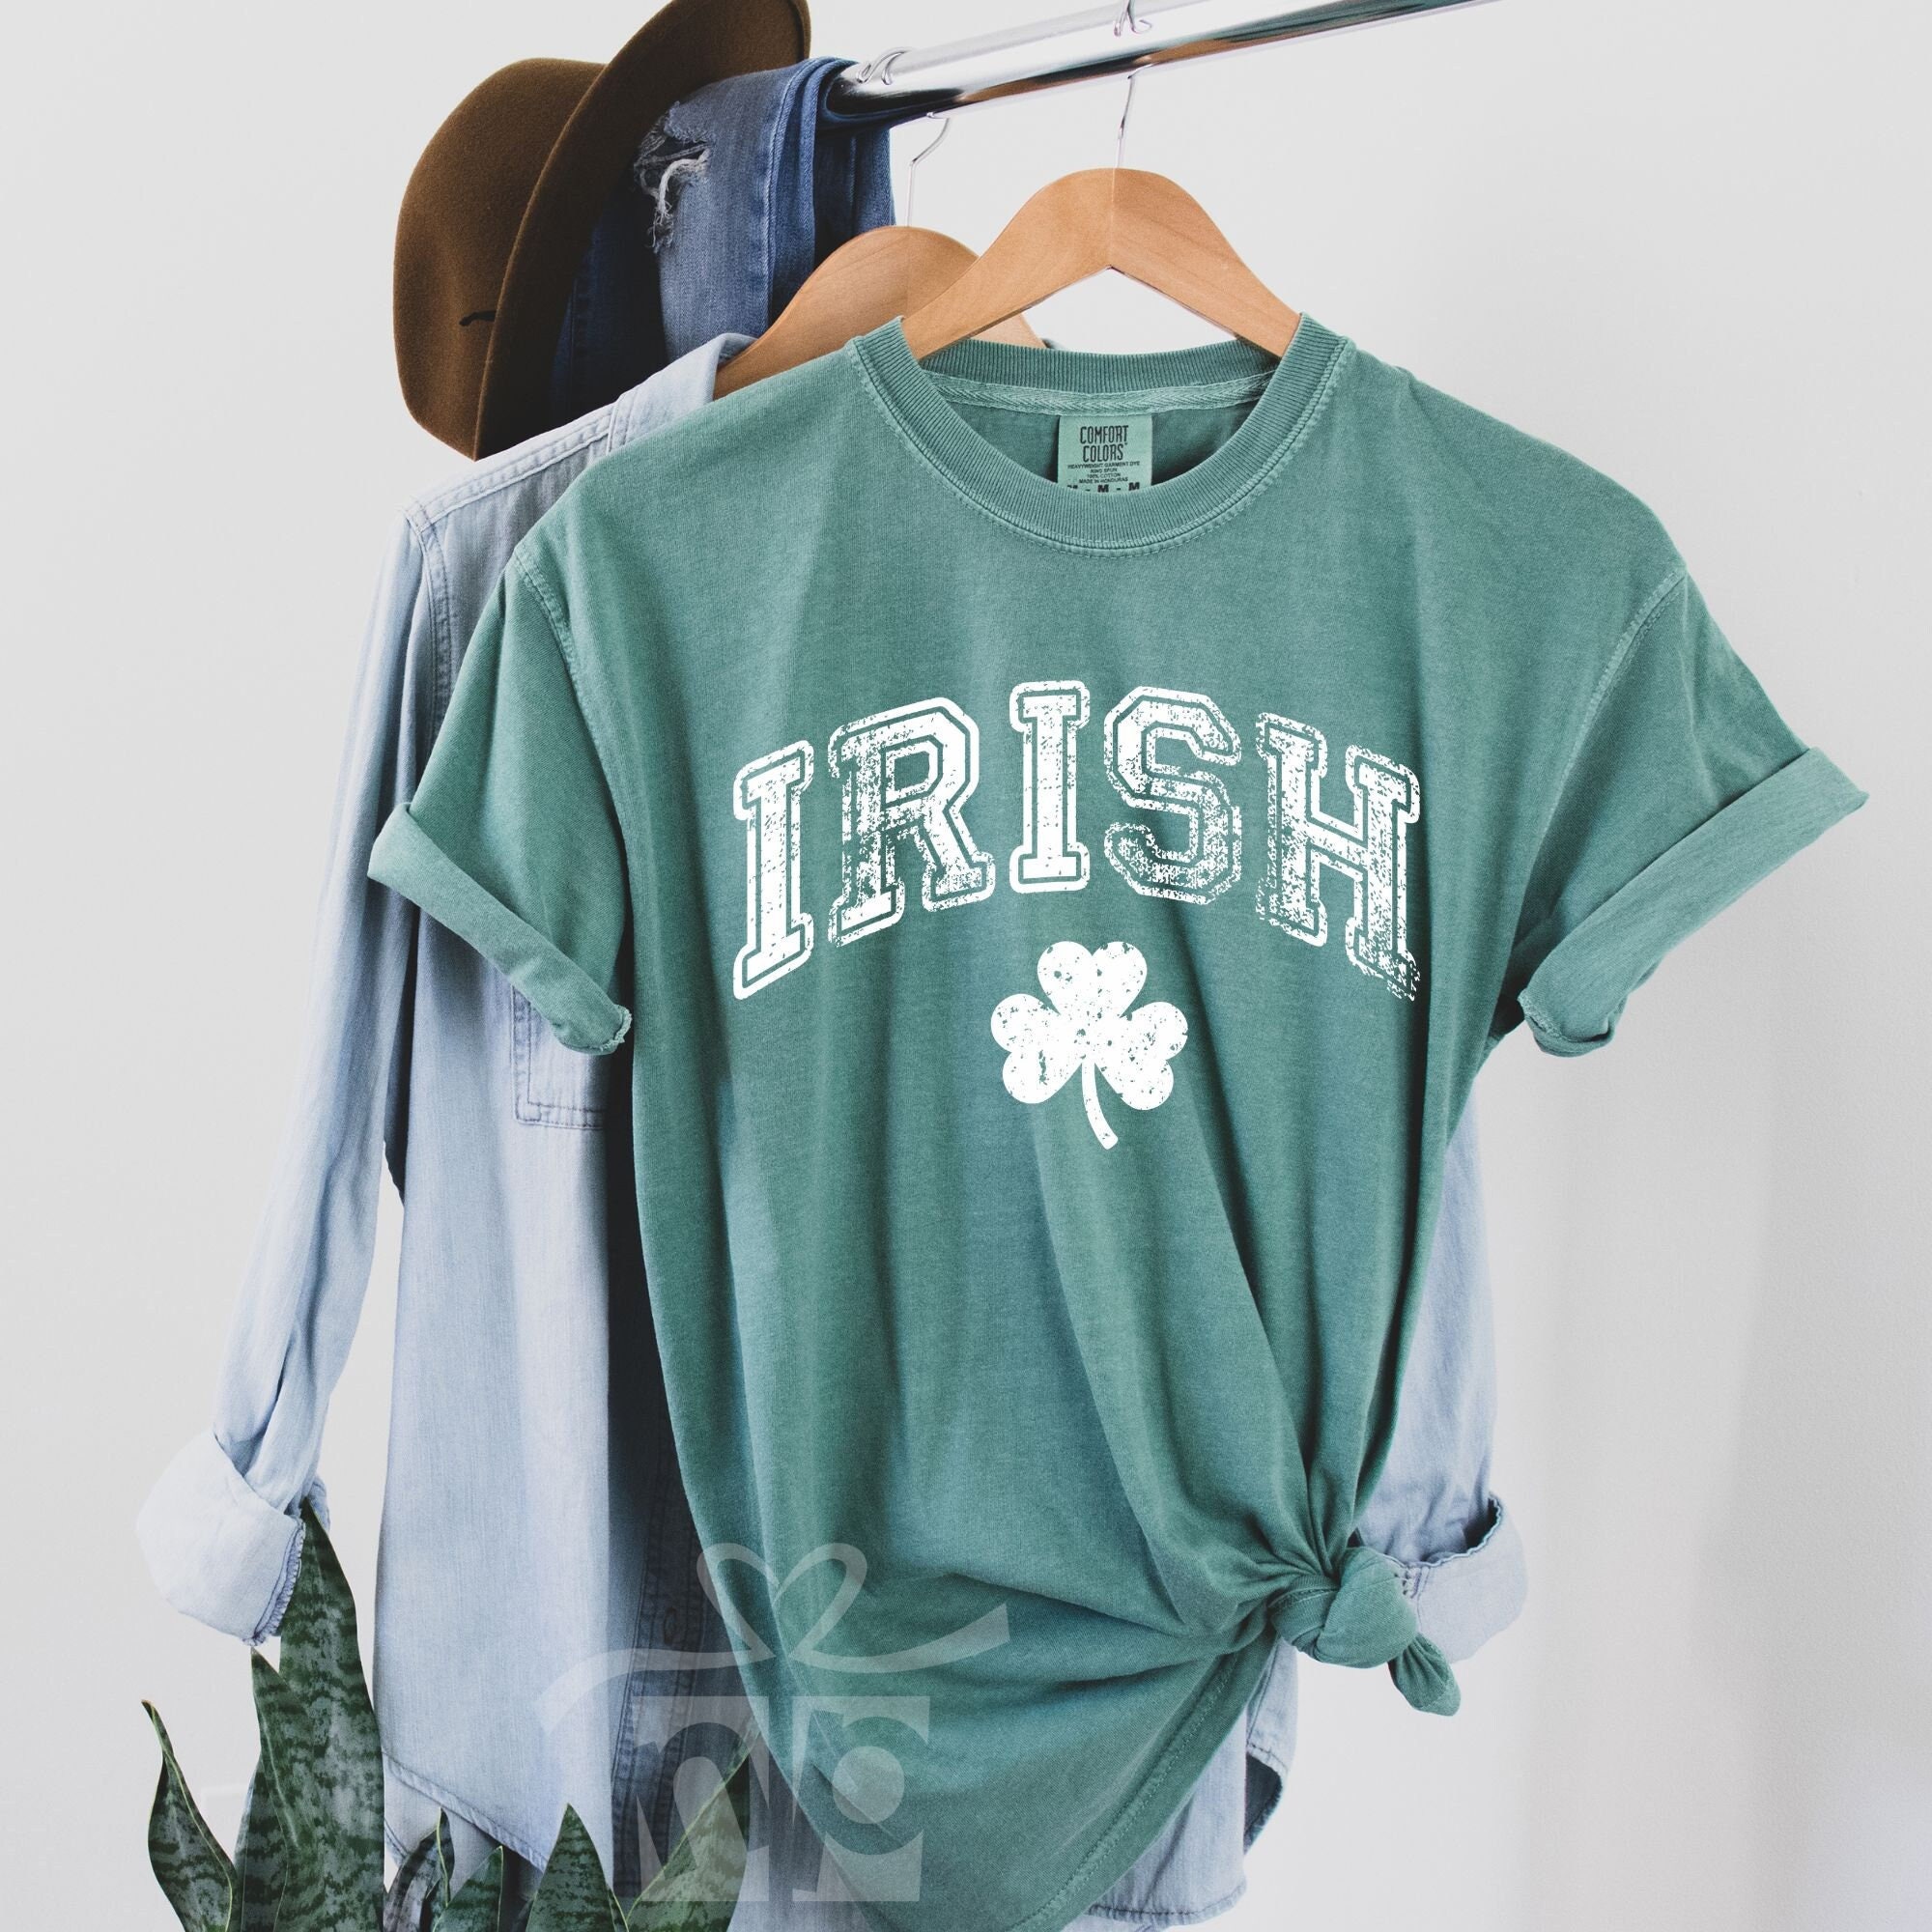 Vintage 90s Genuine Irish Bullshirt T Shirt XL Funny Ireland